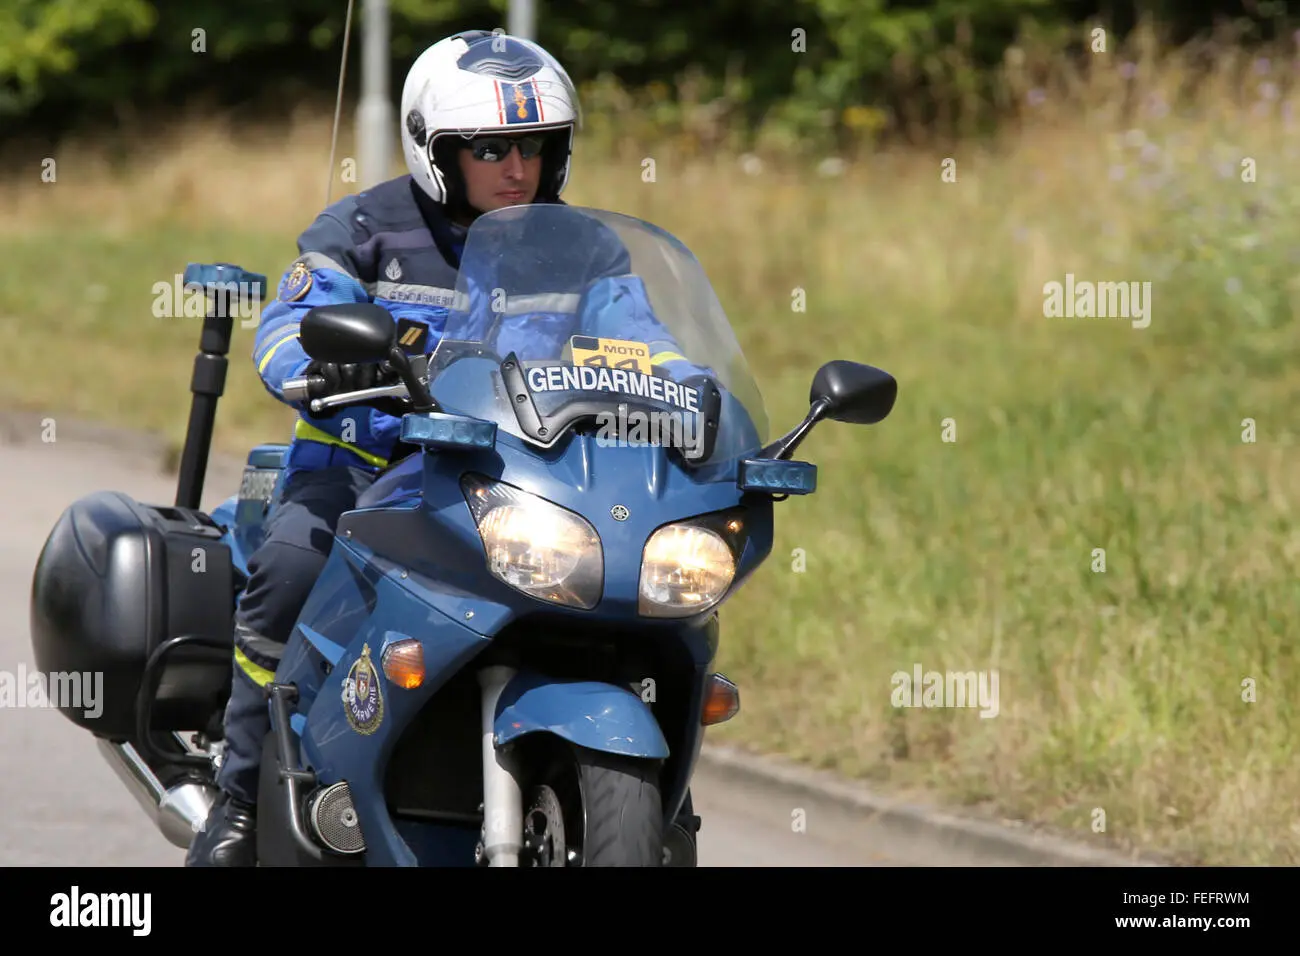 gendarmeria motos - Qué moto usan los gendarmes en Argentina